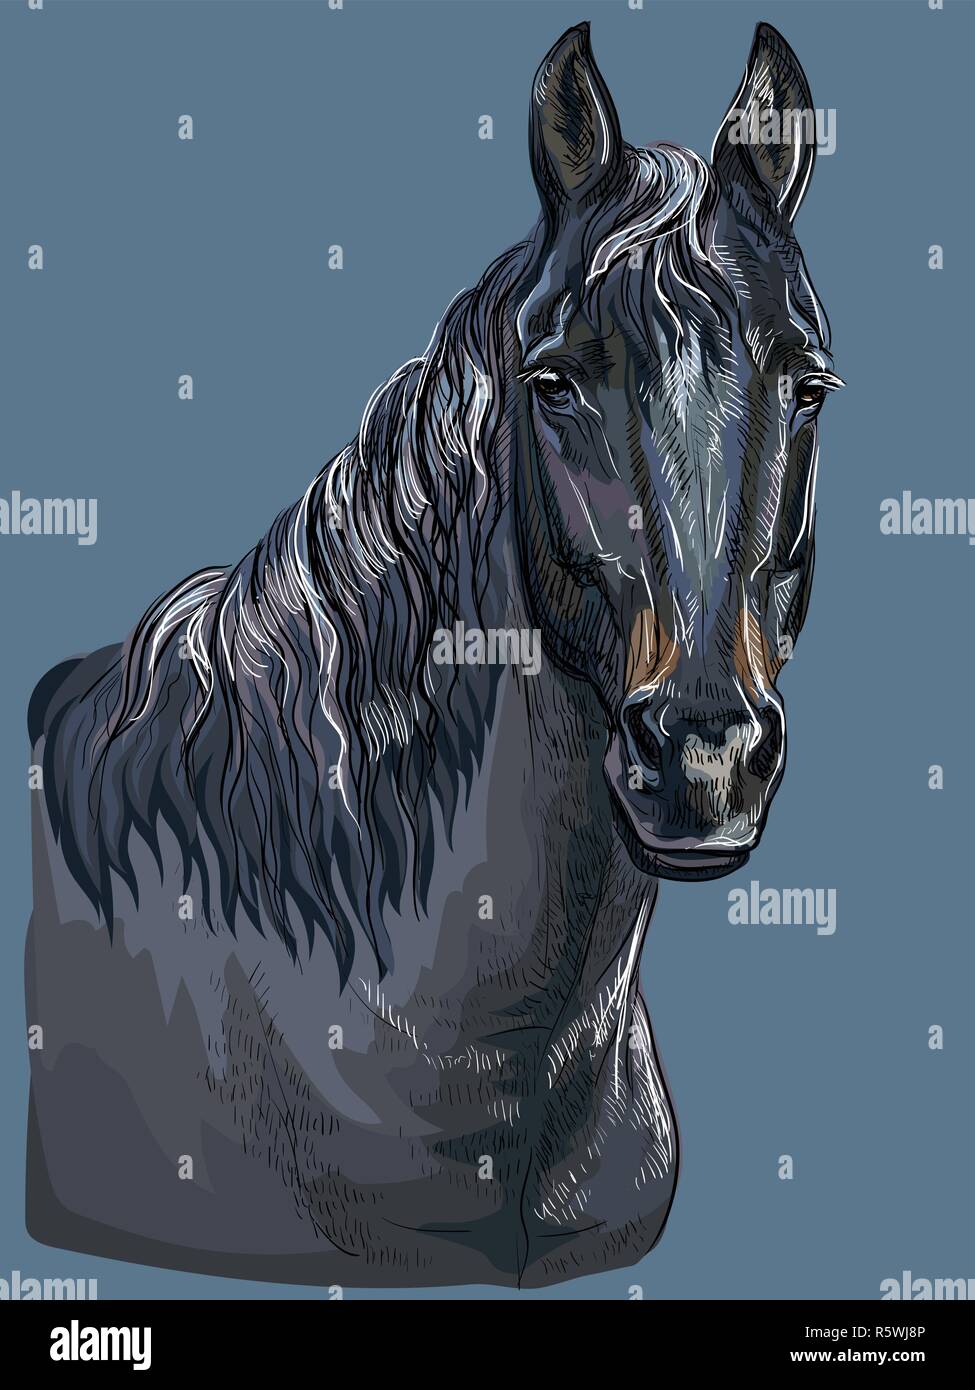 Colorato disegno a mano ritratto di cavallo nero. Testa di cavallo vettore isolato del disegno a mano immagine su sfondo blu scuro Illustrazione Vettoriale